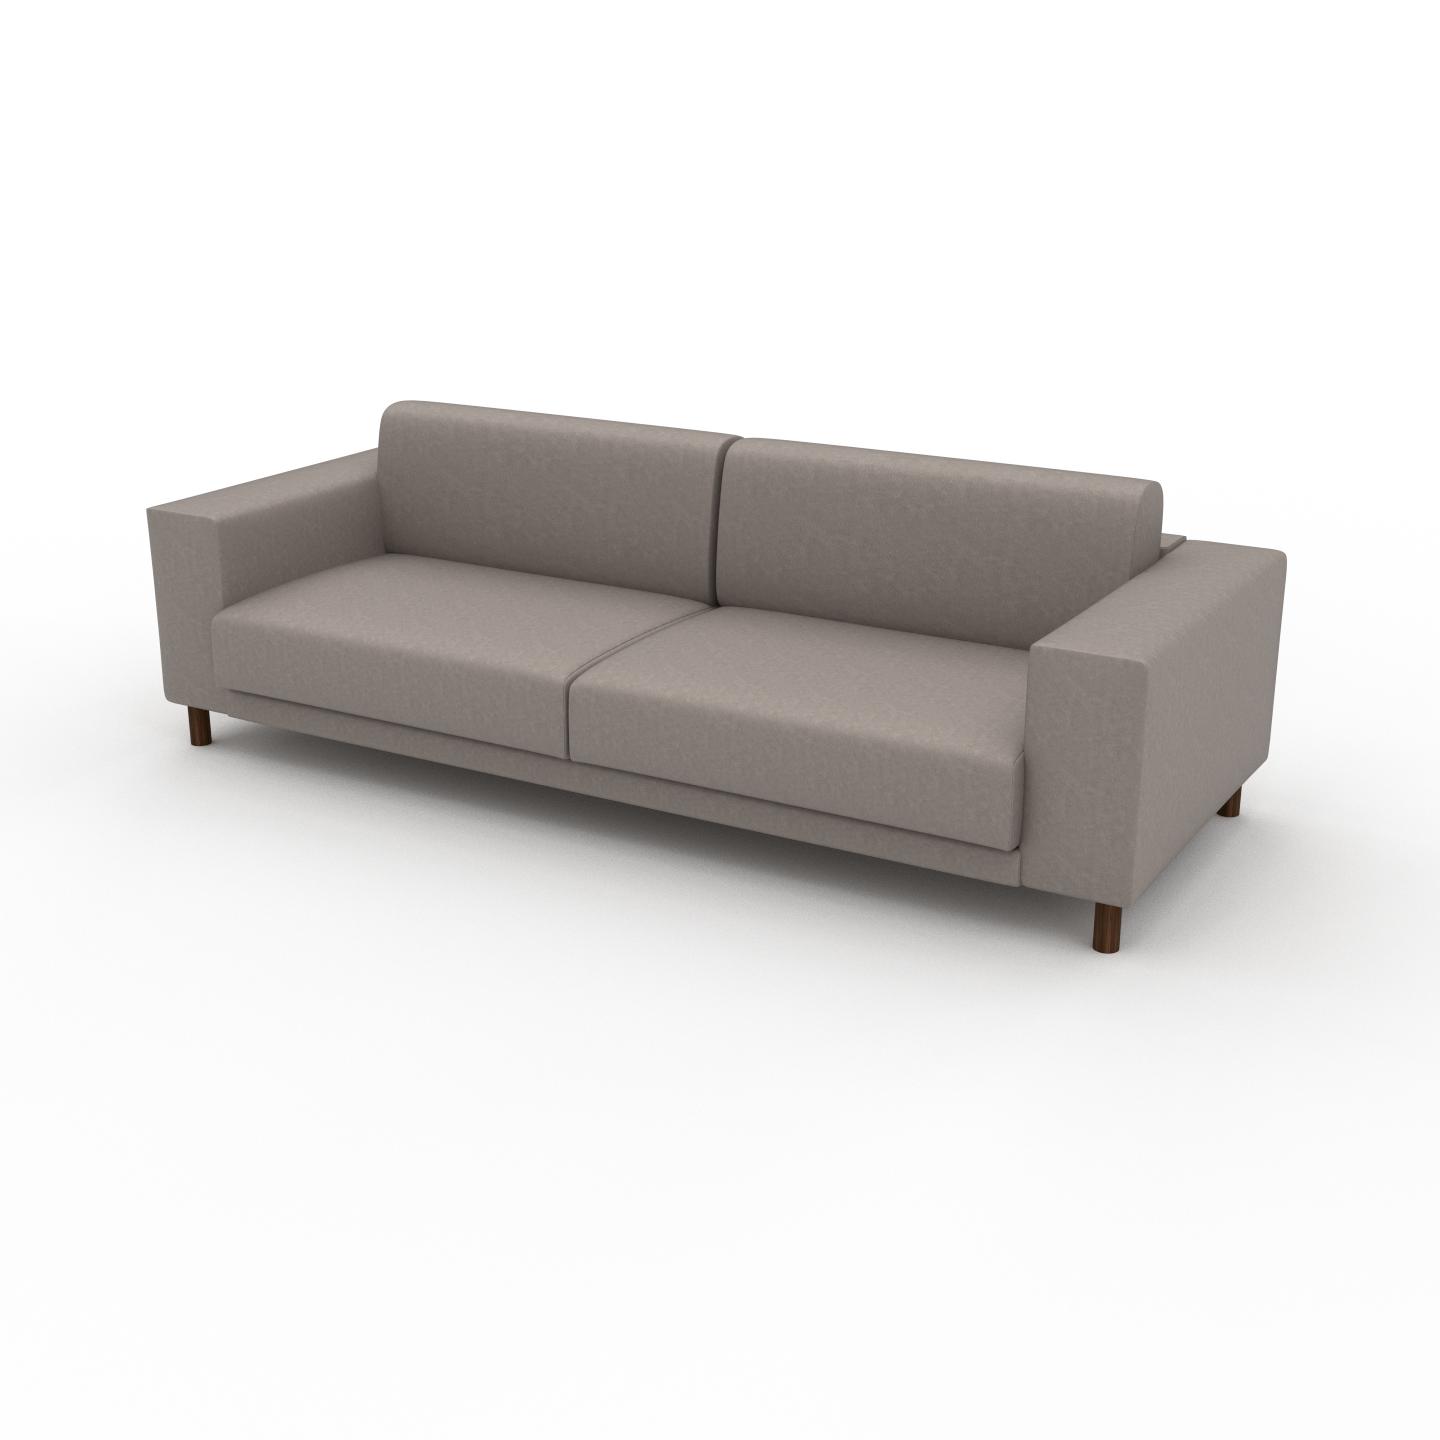 MYCS Sofa Taupebeige - Moderne Designer-Couch: Hochwertige Qualität, einzigartiges Design - 248 x 75 x 98 cm, Komplett anpassbar